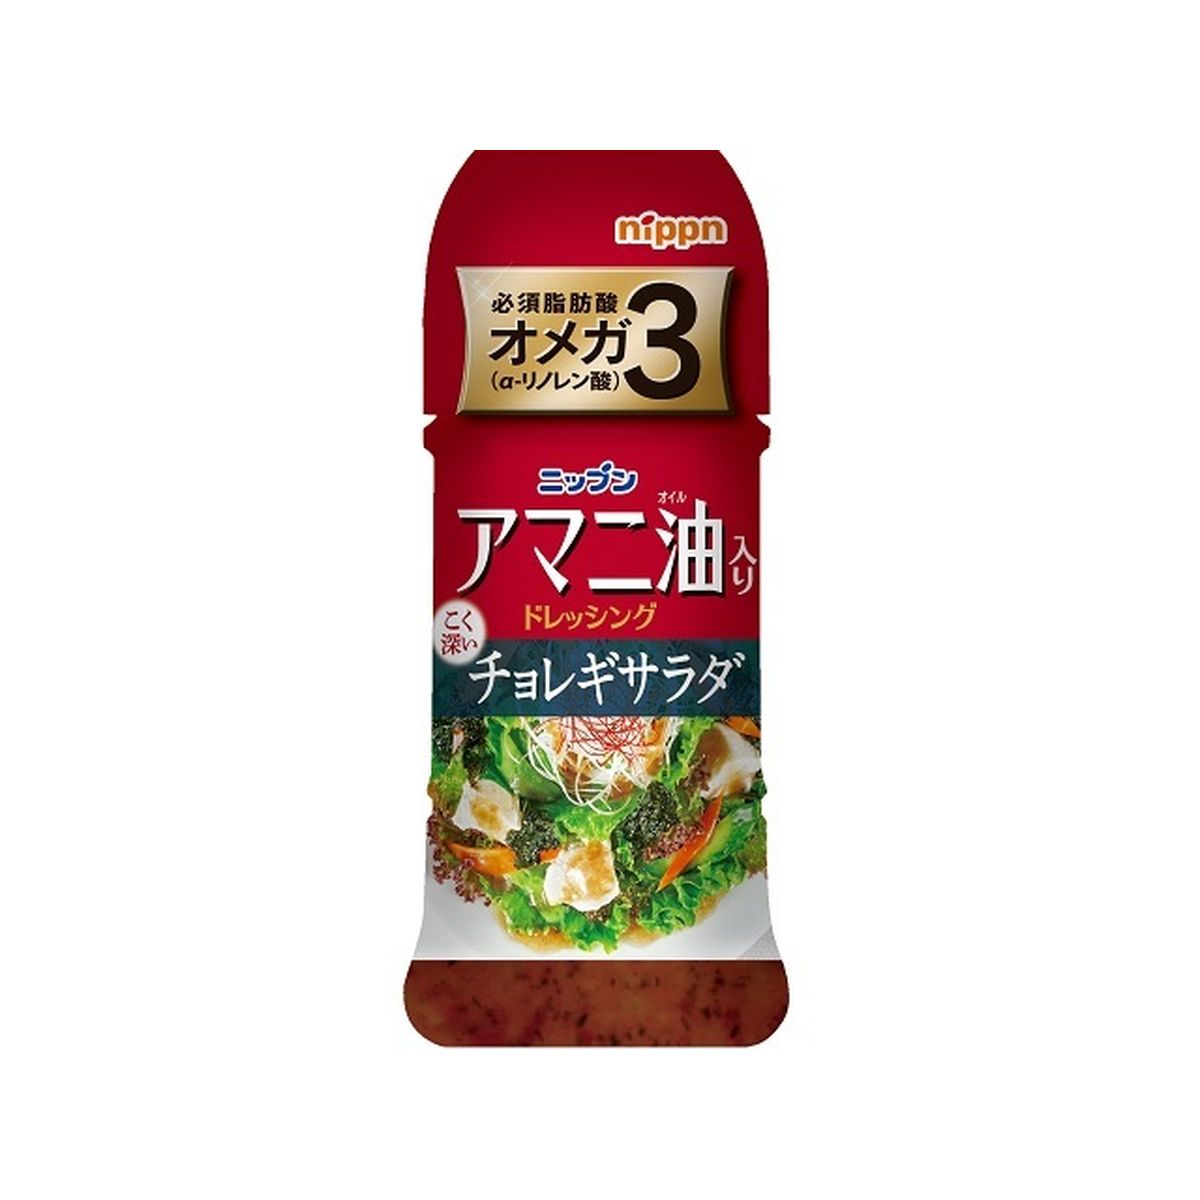 【12個入り】日本製粉 ニップン アマニ油入りドレッシング チョレギサラダ 150ml